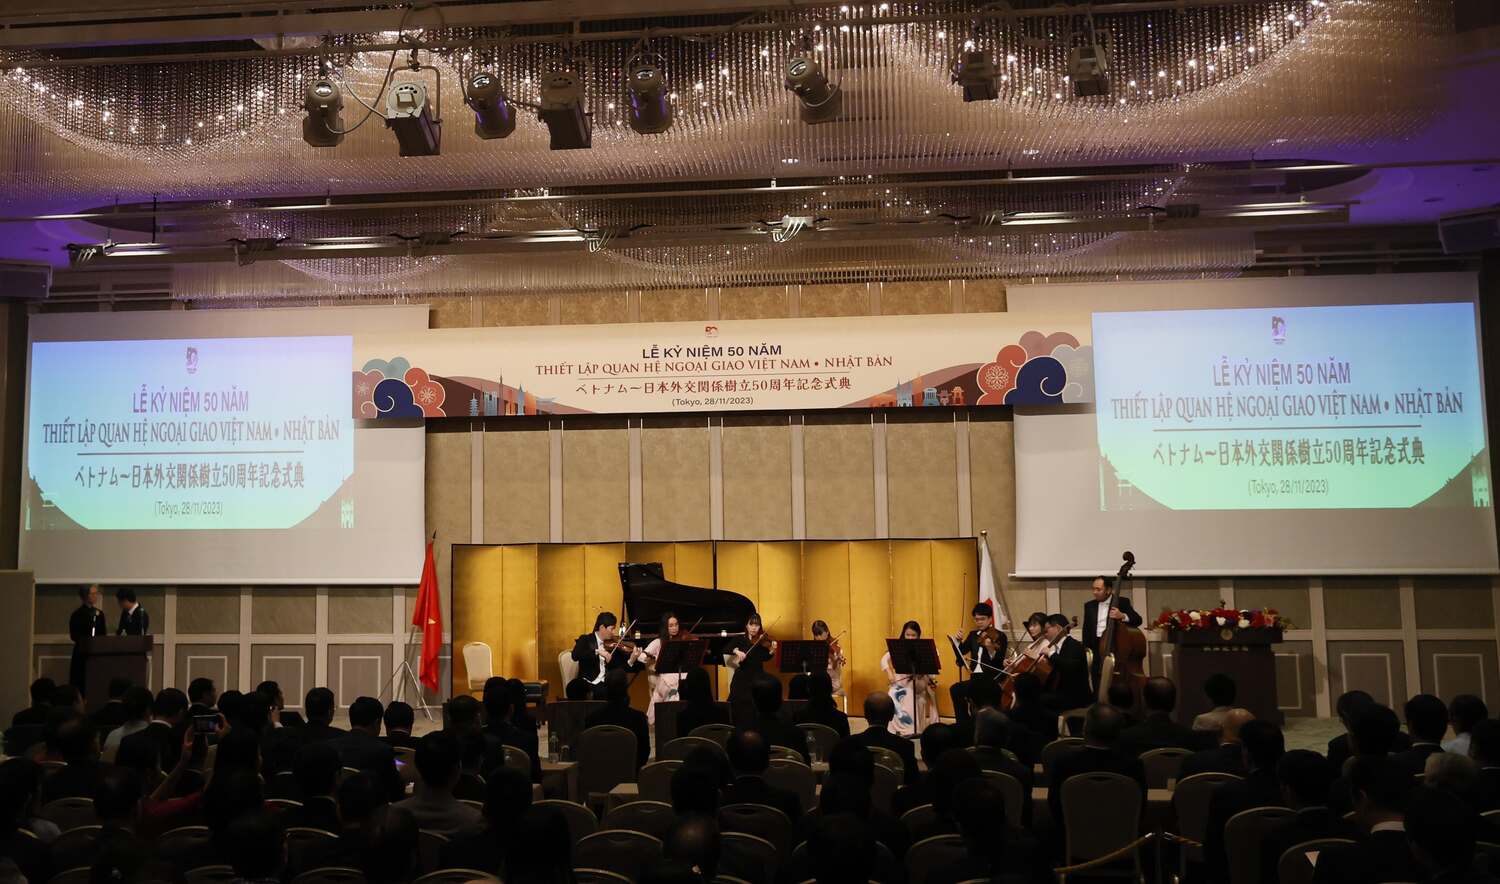 Biểu diễn âm nhạc tại Lễ kỷ niệm 50 năm thiết lập quan hệ ngoại giao Việt Nam - Nhật Bản. Ảnh: TTXVN